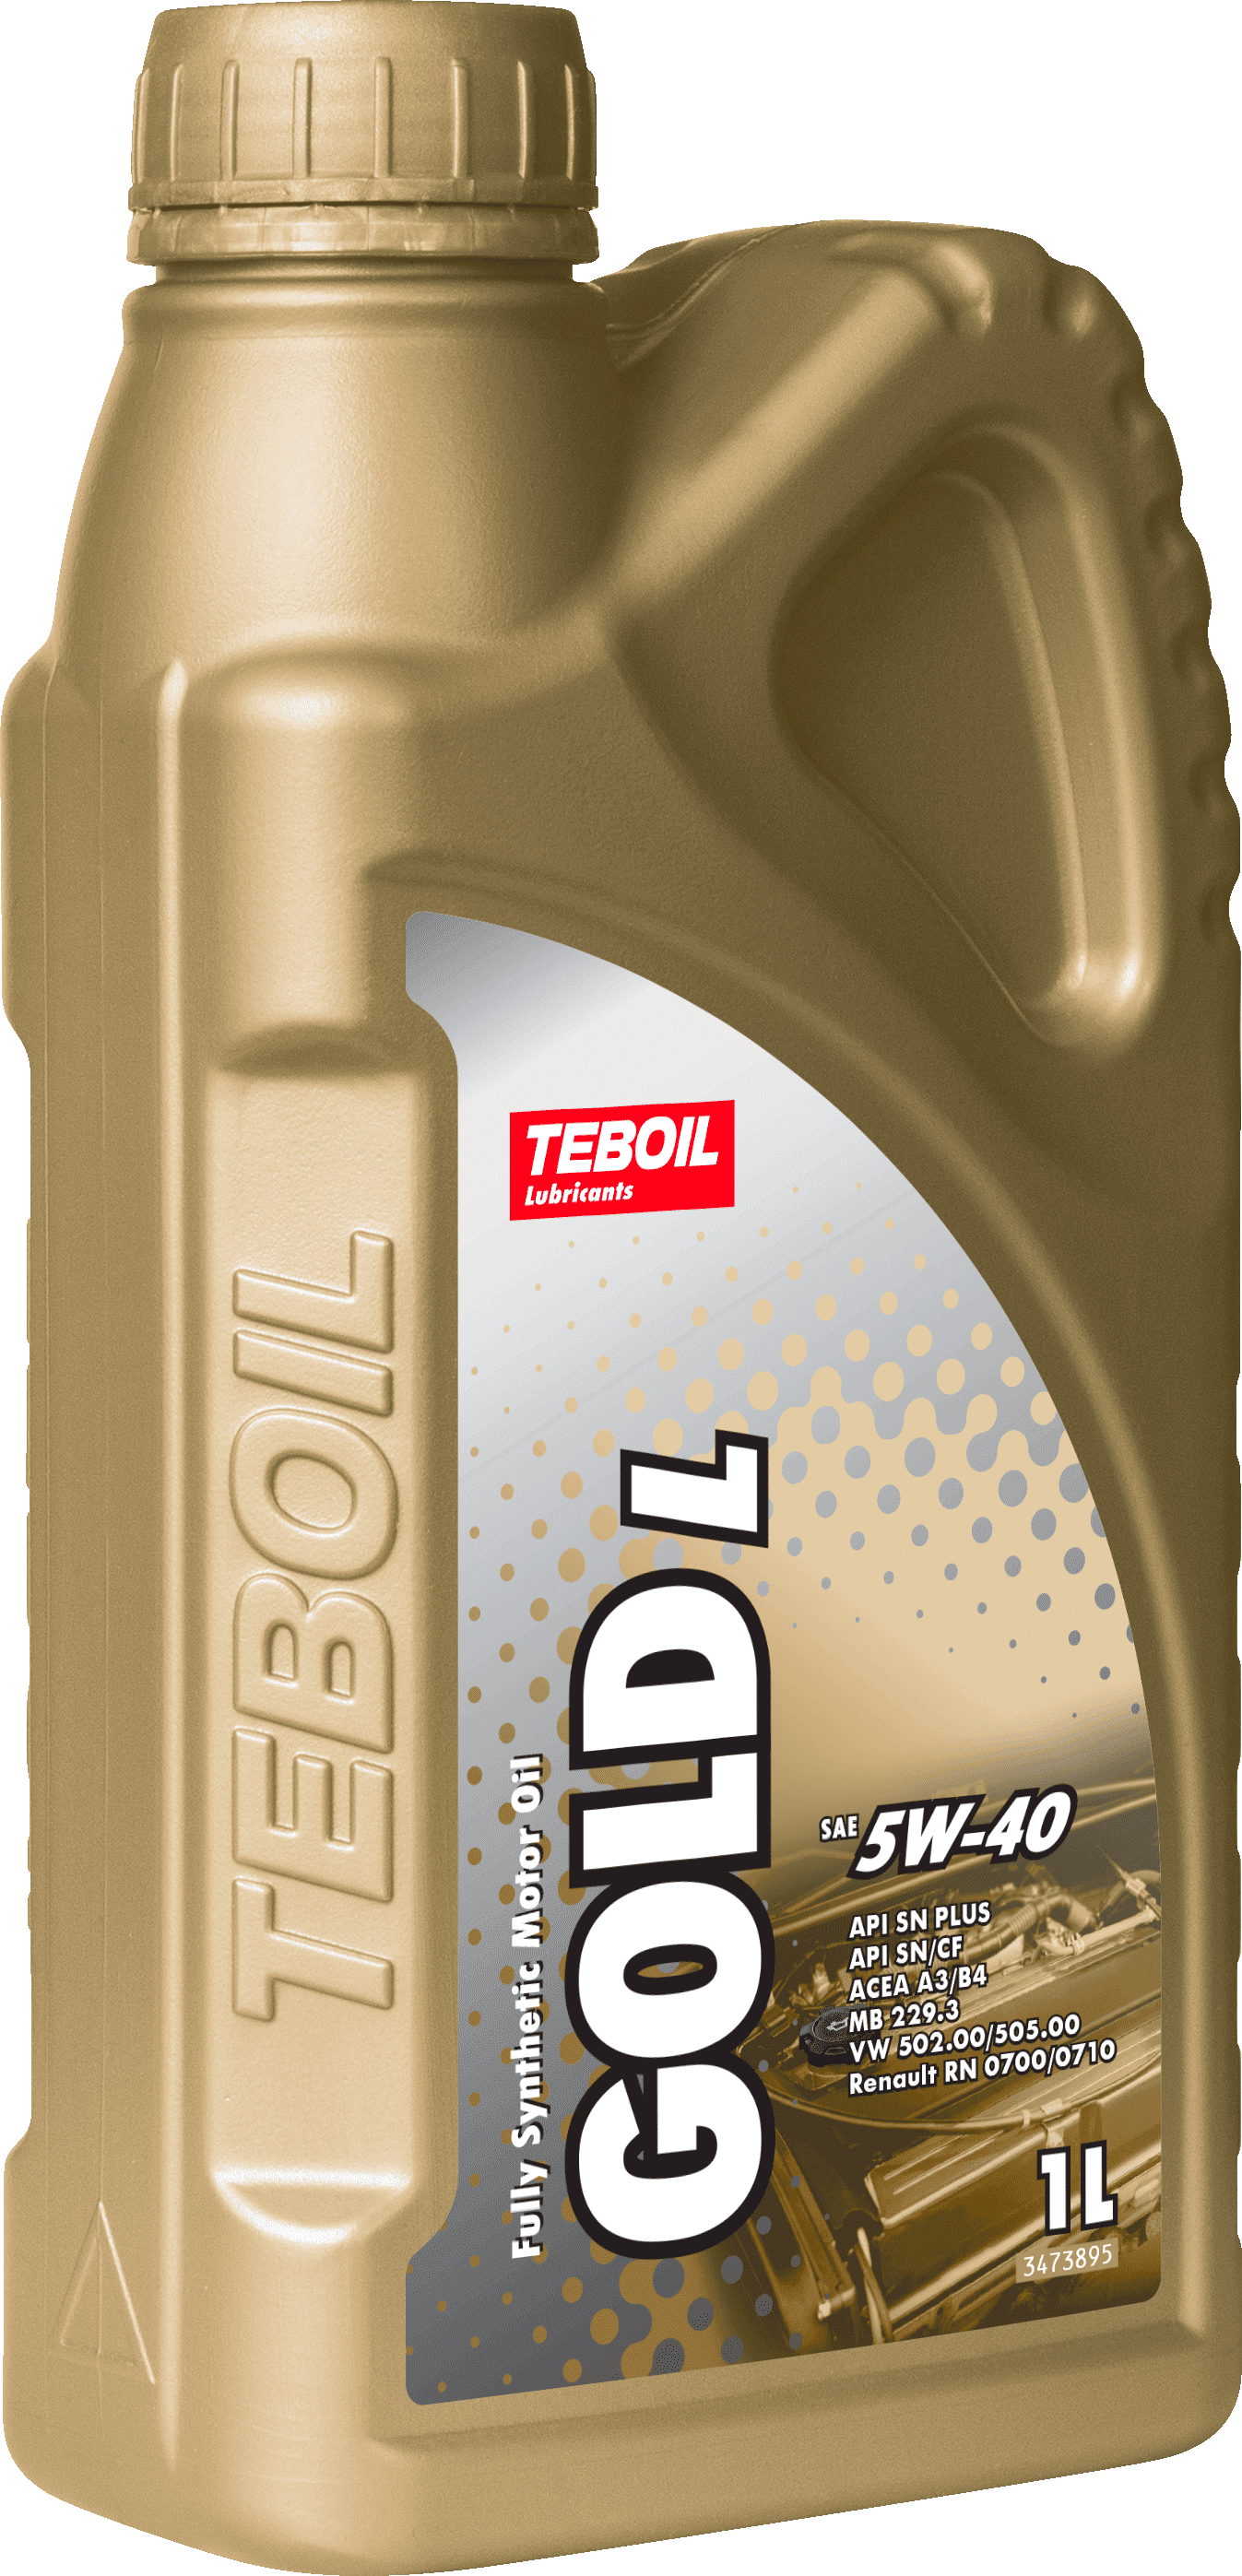 Синтетическое моторное масло TEBOIL GOLD L 5W-40